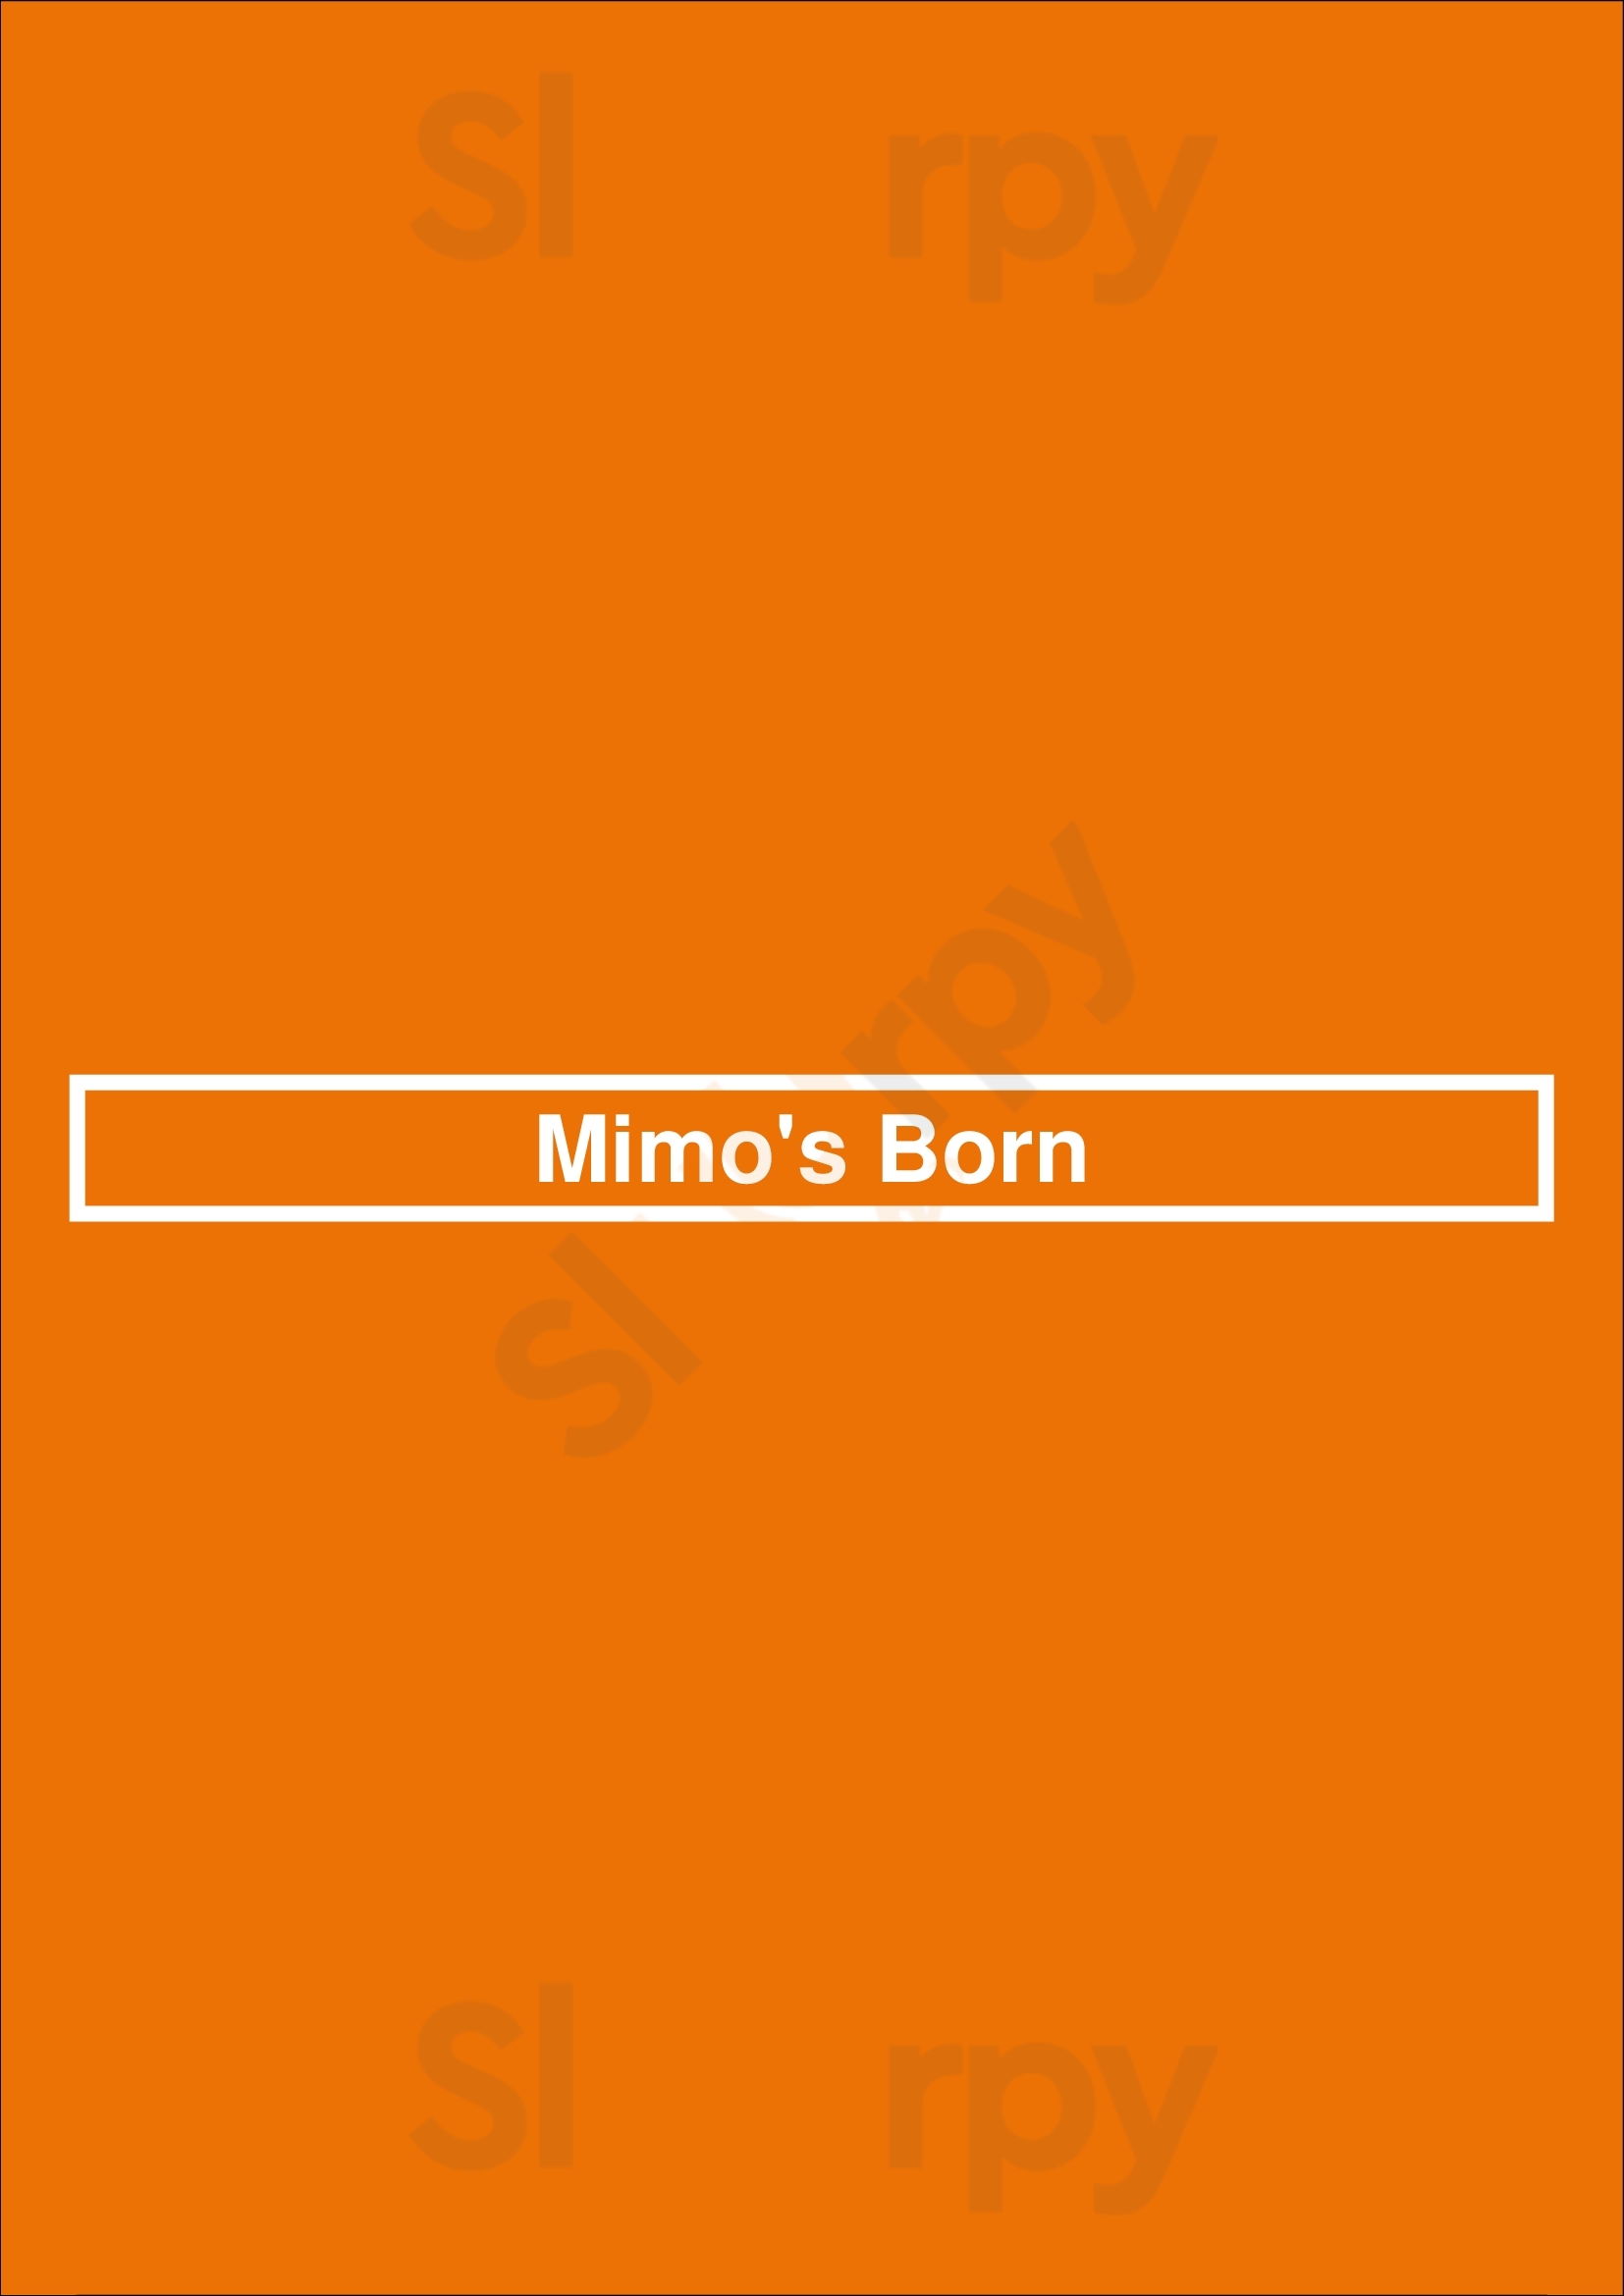 Mimo's Born Barcelona Menu - 1